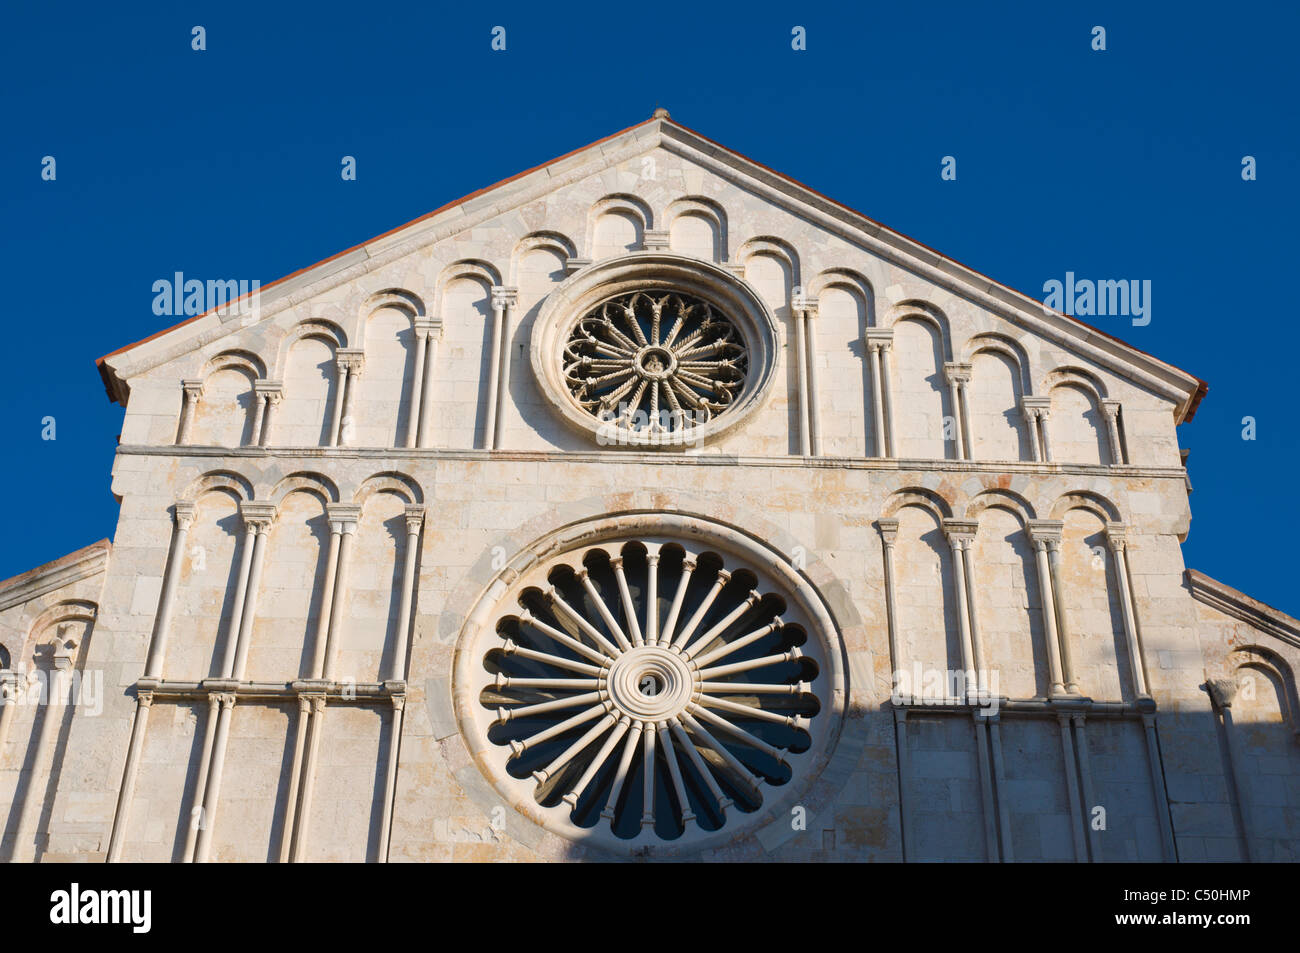 Katedrala Sv Stosije la Santa Anastasia Duomo centro storico di Zara Dalmazia settentrionale Croazia Europa Foto Stock